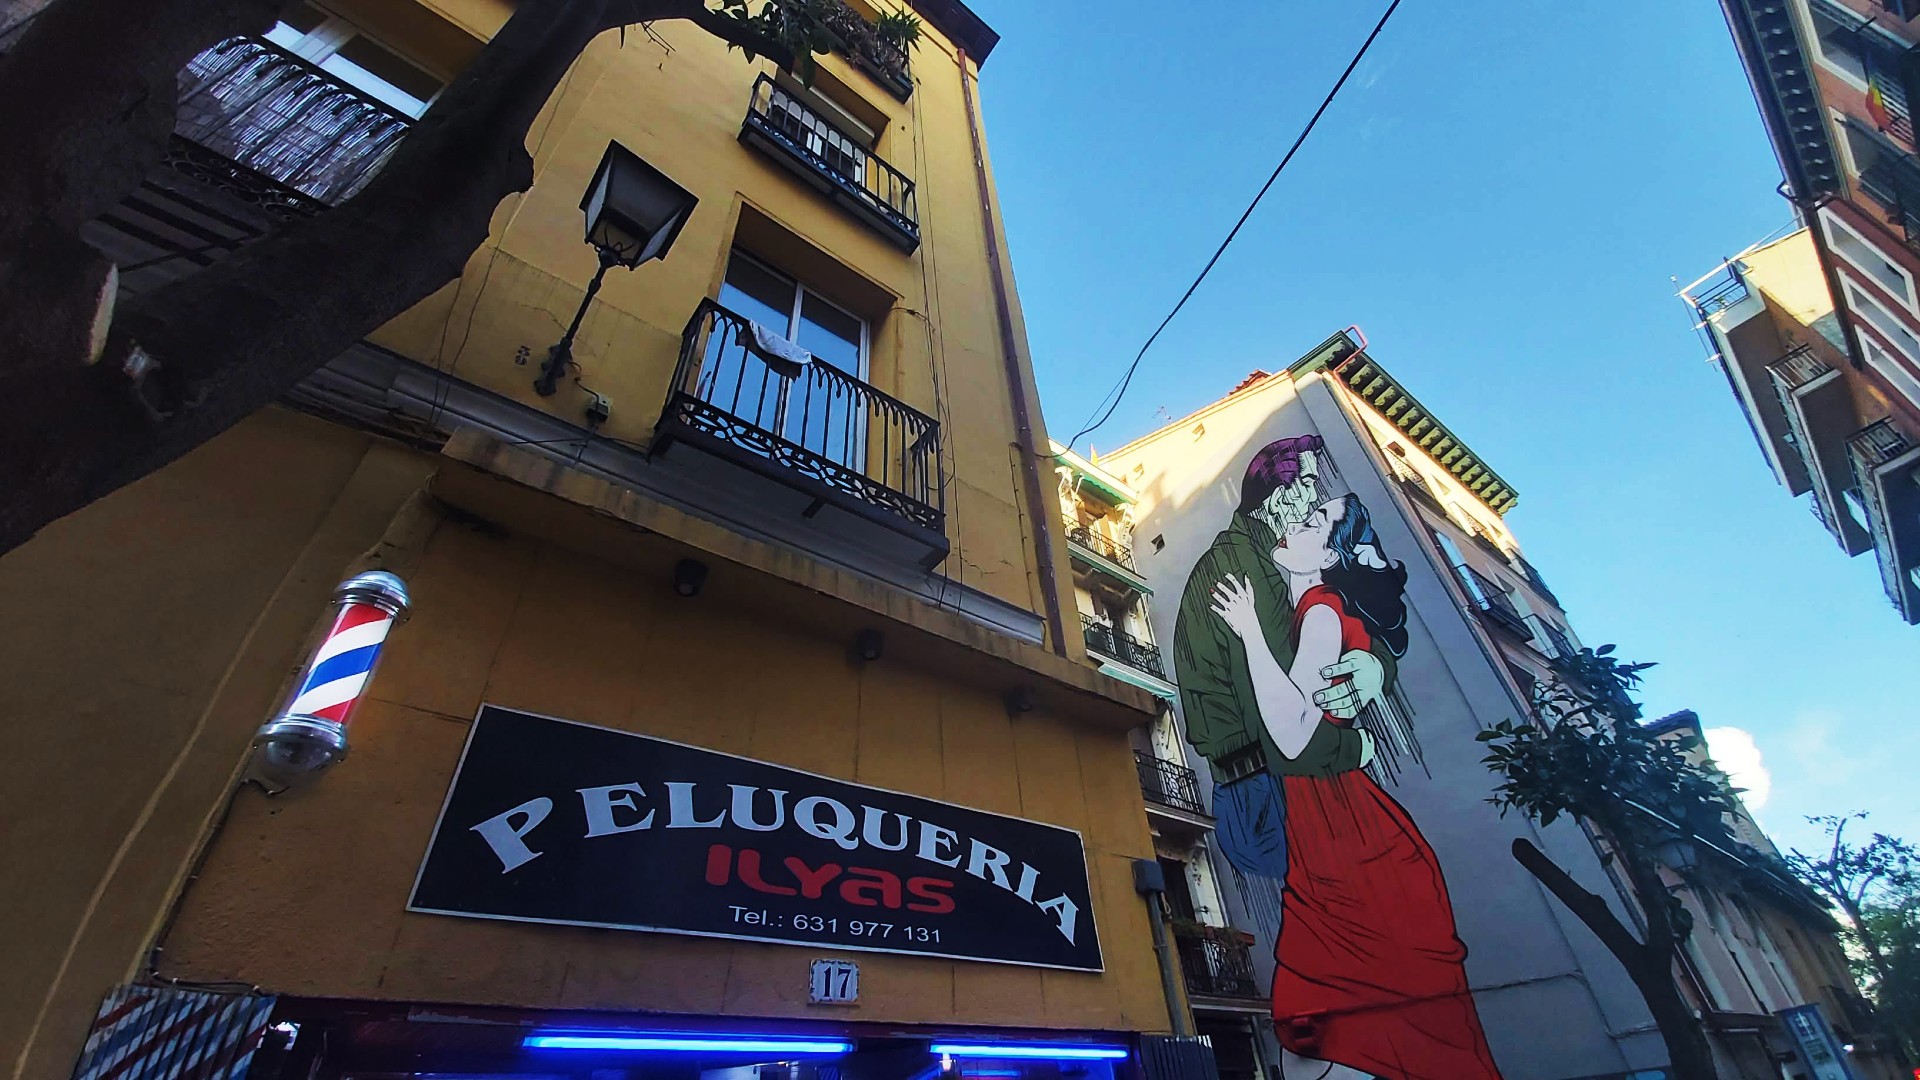 El barrio de Embajadores, que acoge El Rastro y Lavapiés, es una zona alternativa llena de bares, cafés y el mejor arte callejero de Madrid.